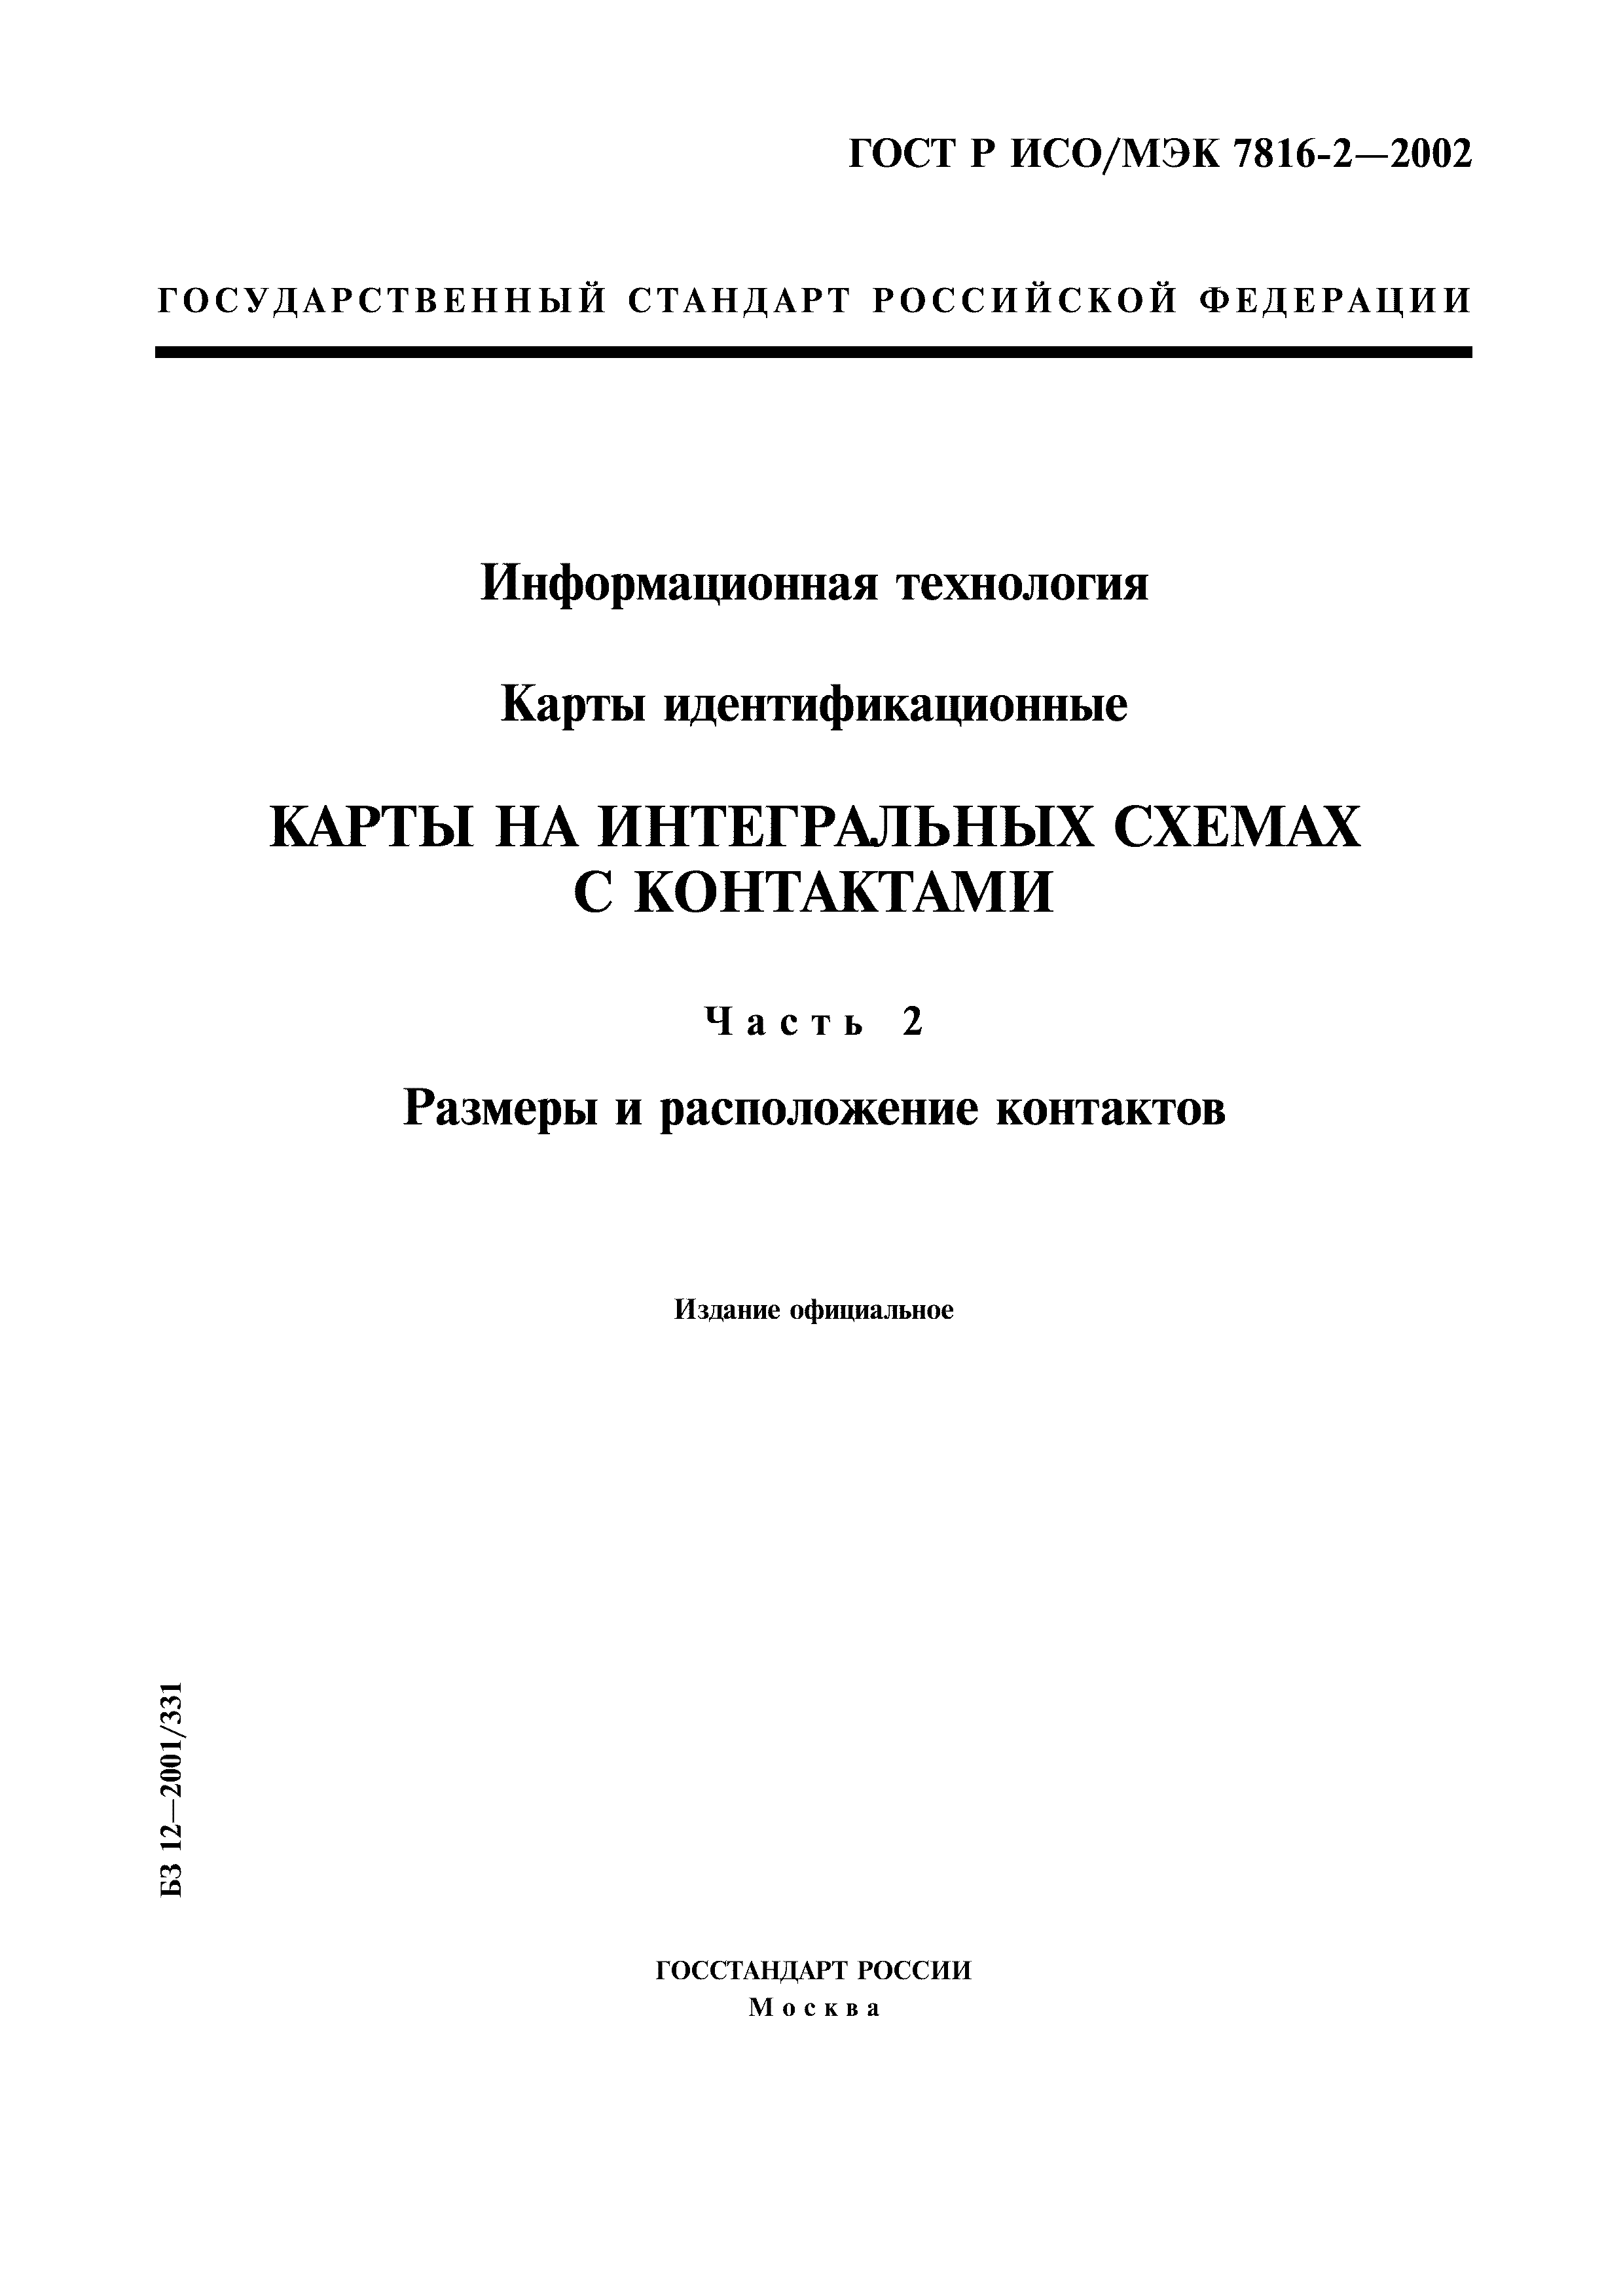 ГОСТ Р ИСО/МЭК 7816-2-2002